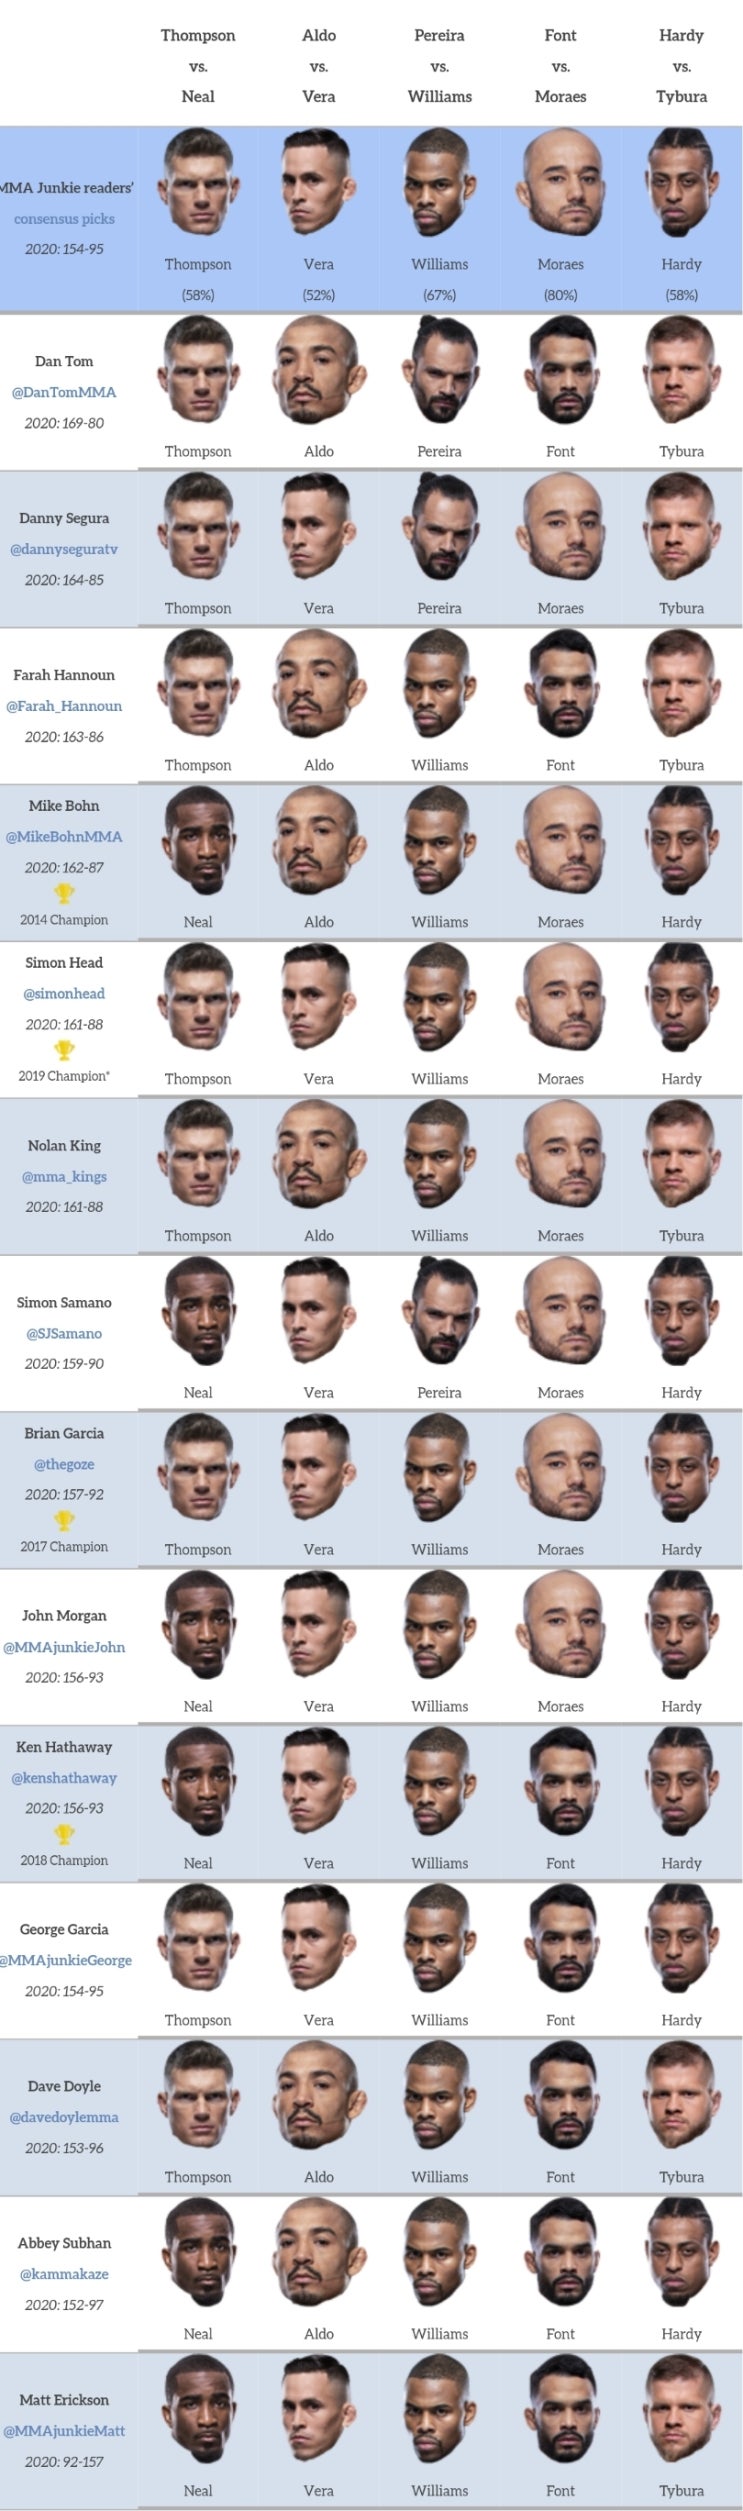 UFC 베가스 17: 톰슨 vs 닐 프리뷰(미디어 예상 및 배당률)